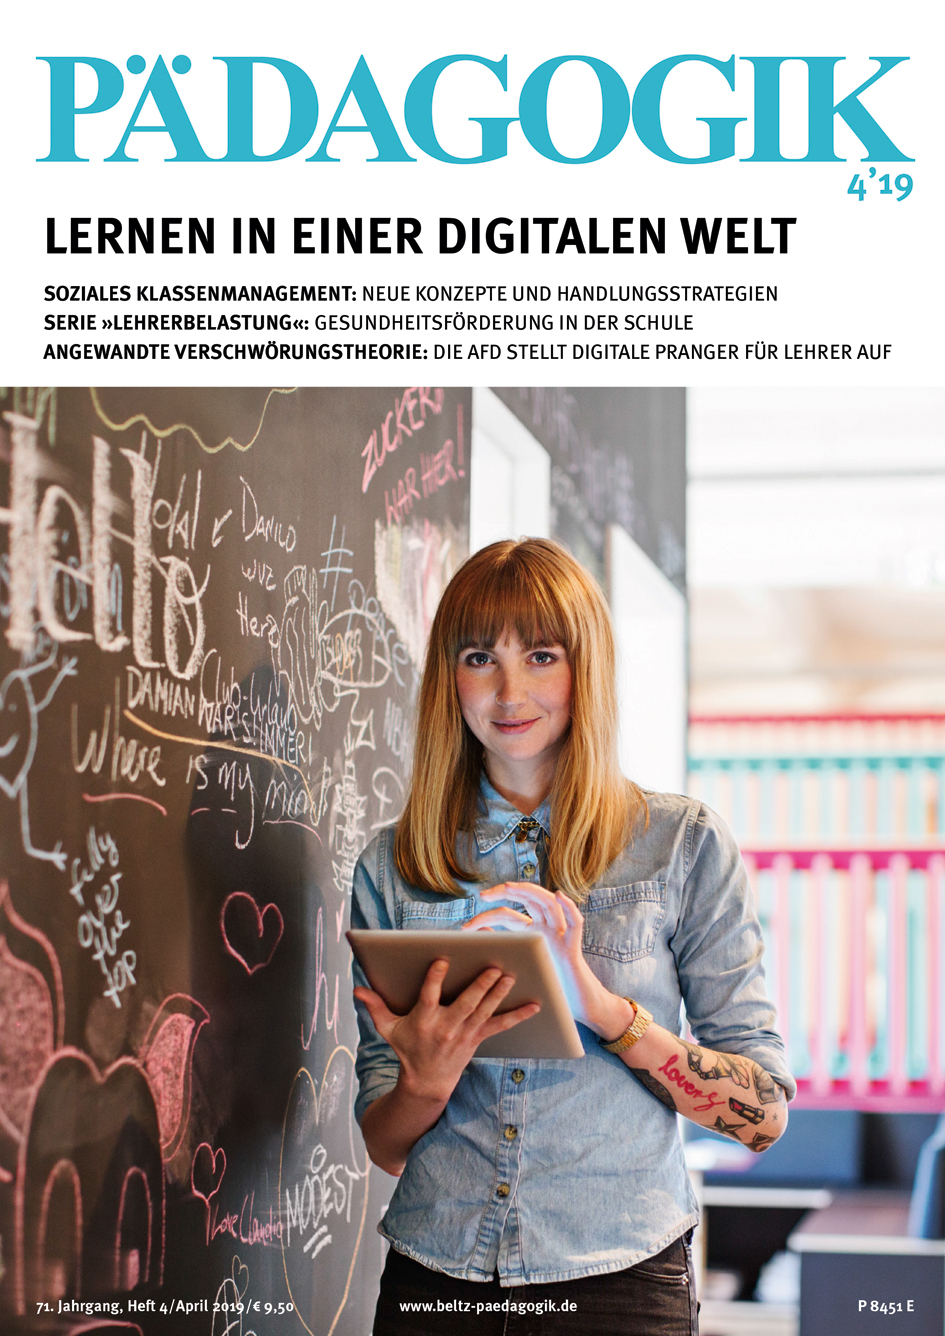 Titelseite der Zeitschrift PÄDAGOGIK 4/2019 zum Thema Lernen in einer Digitalen Welt